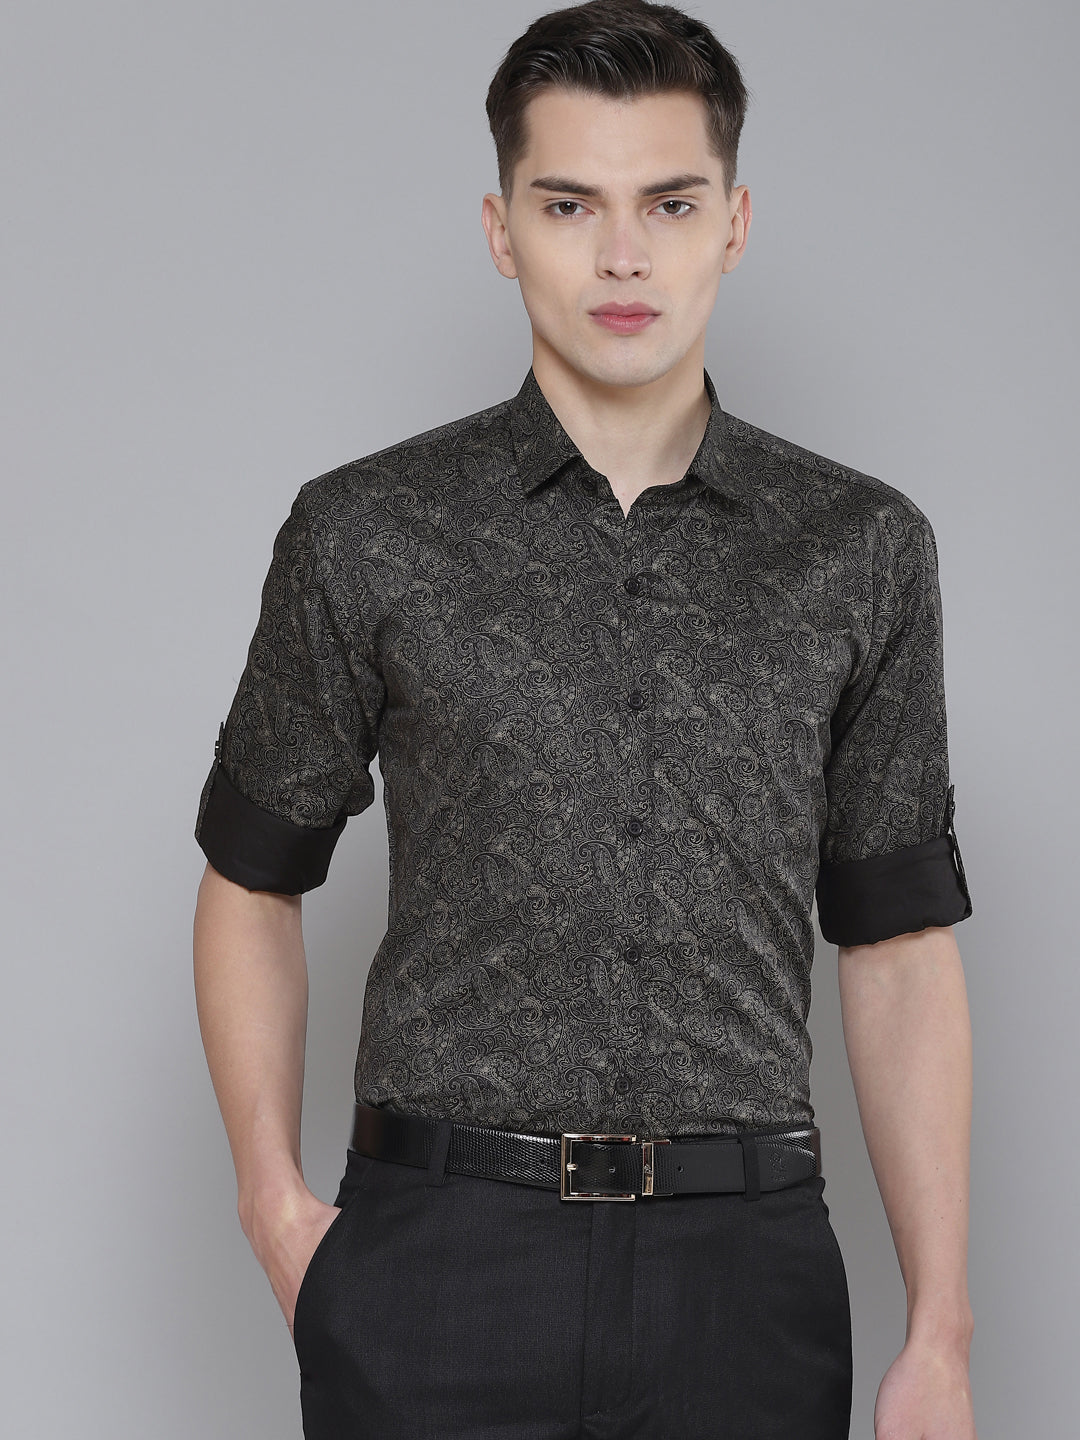 DENNISON Men Black Smart Slim Fit Printed Formal Shirt